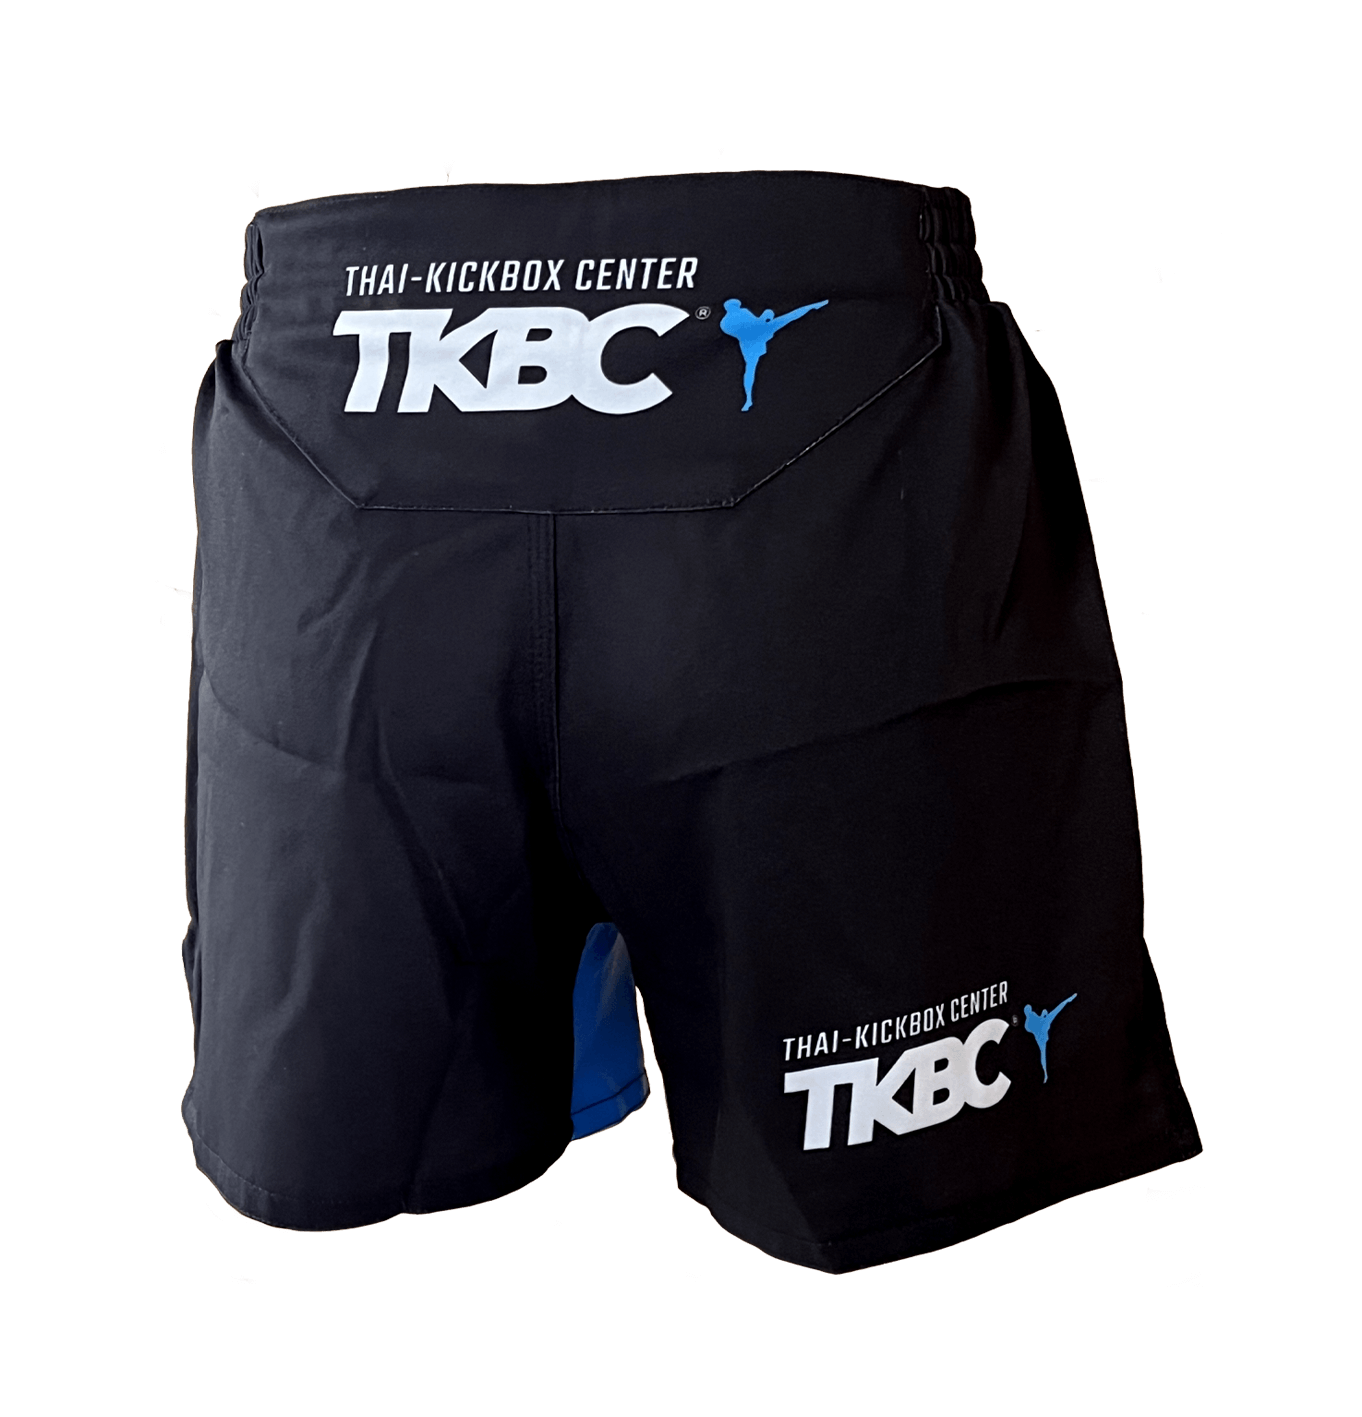 TKBC MMA Shorts (kurz)